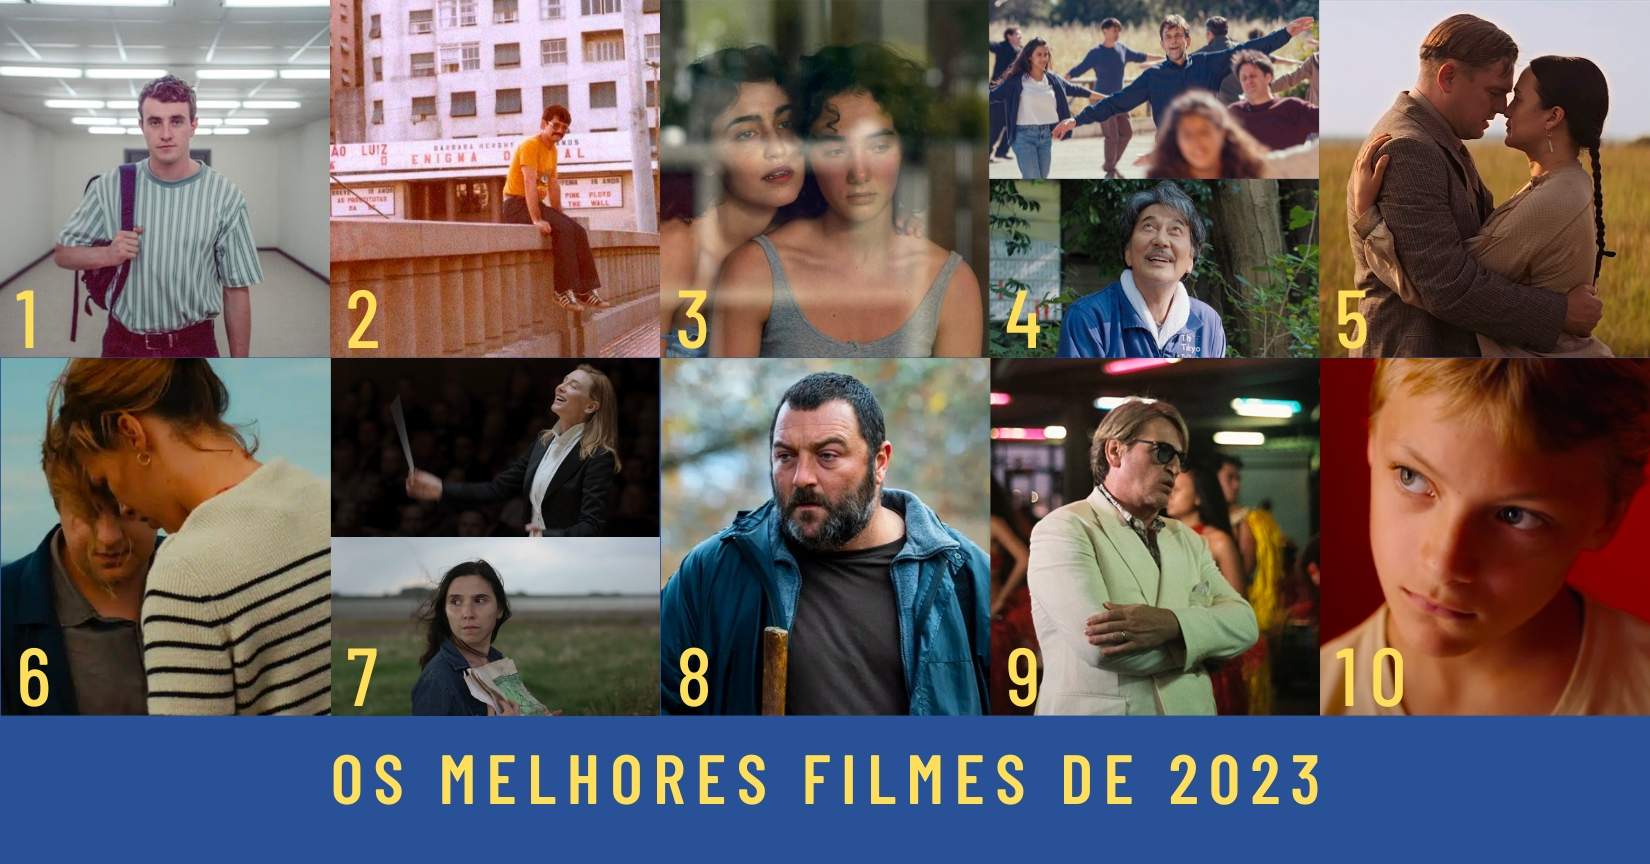 Os melhores filmes de 2023, segundo o Cinema Sétima Arte